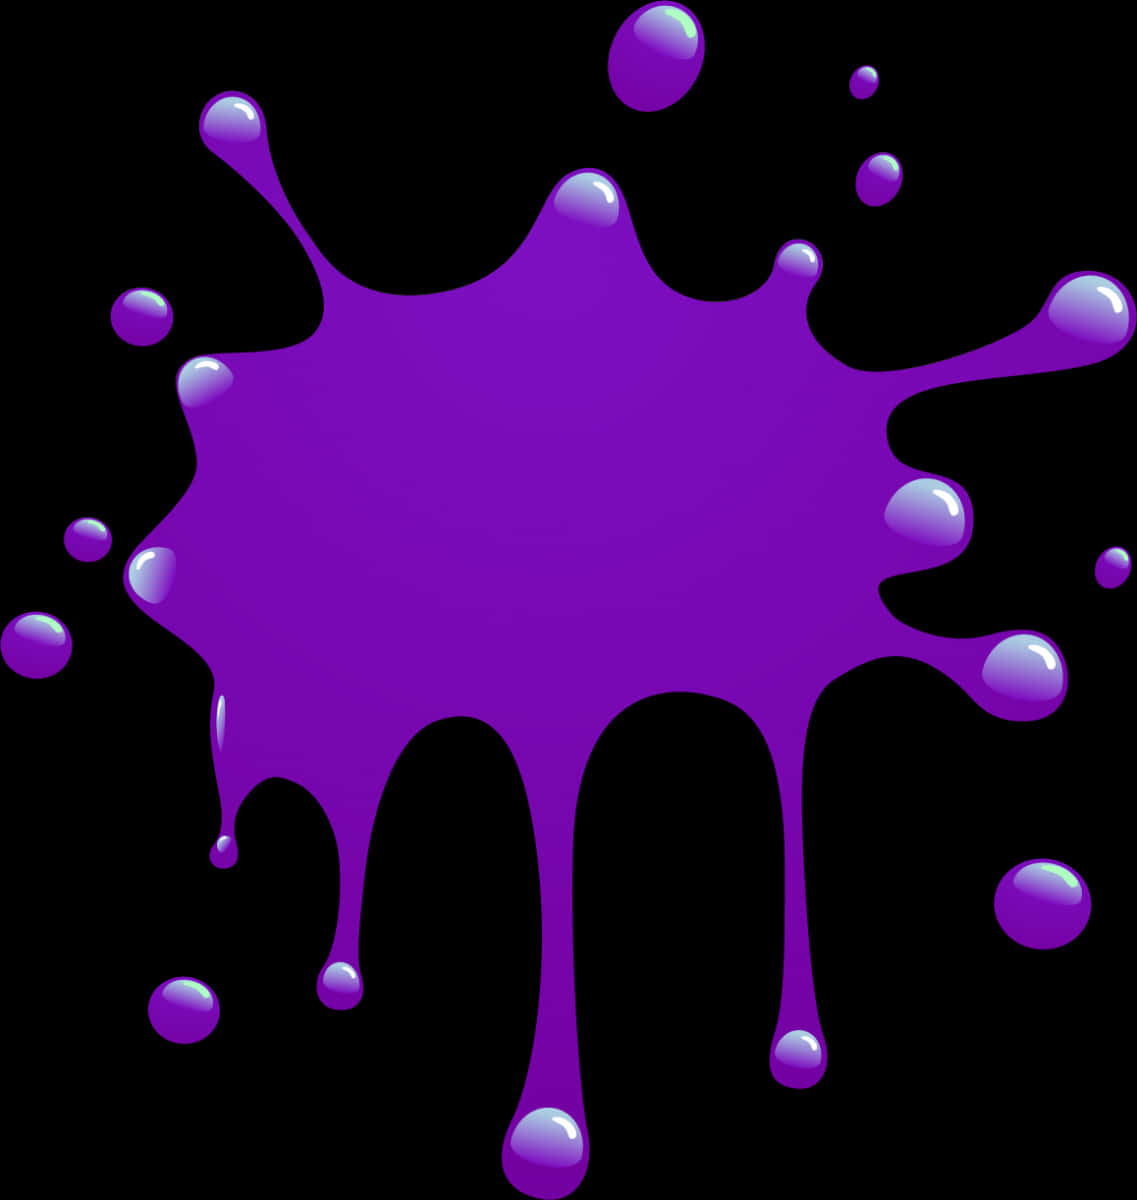 A Purple Blot Of Paint